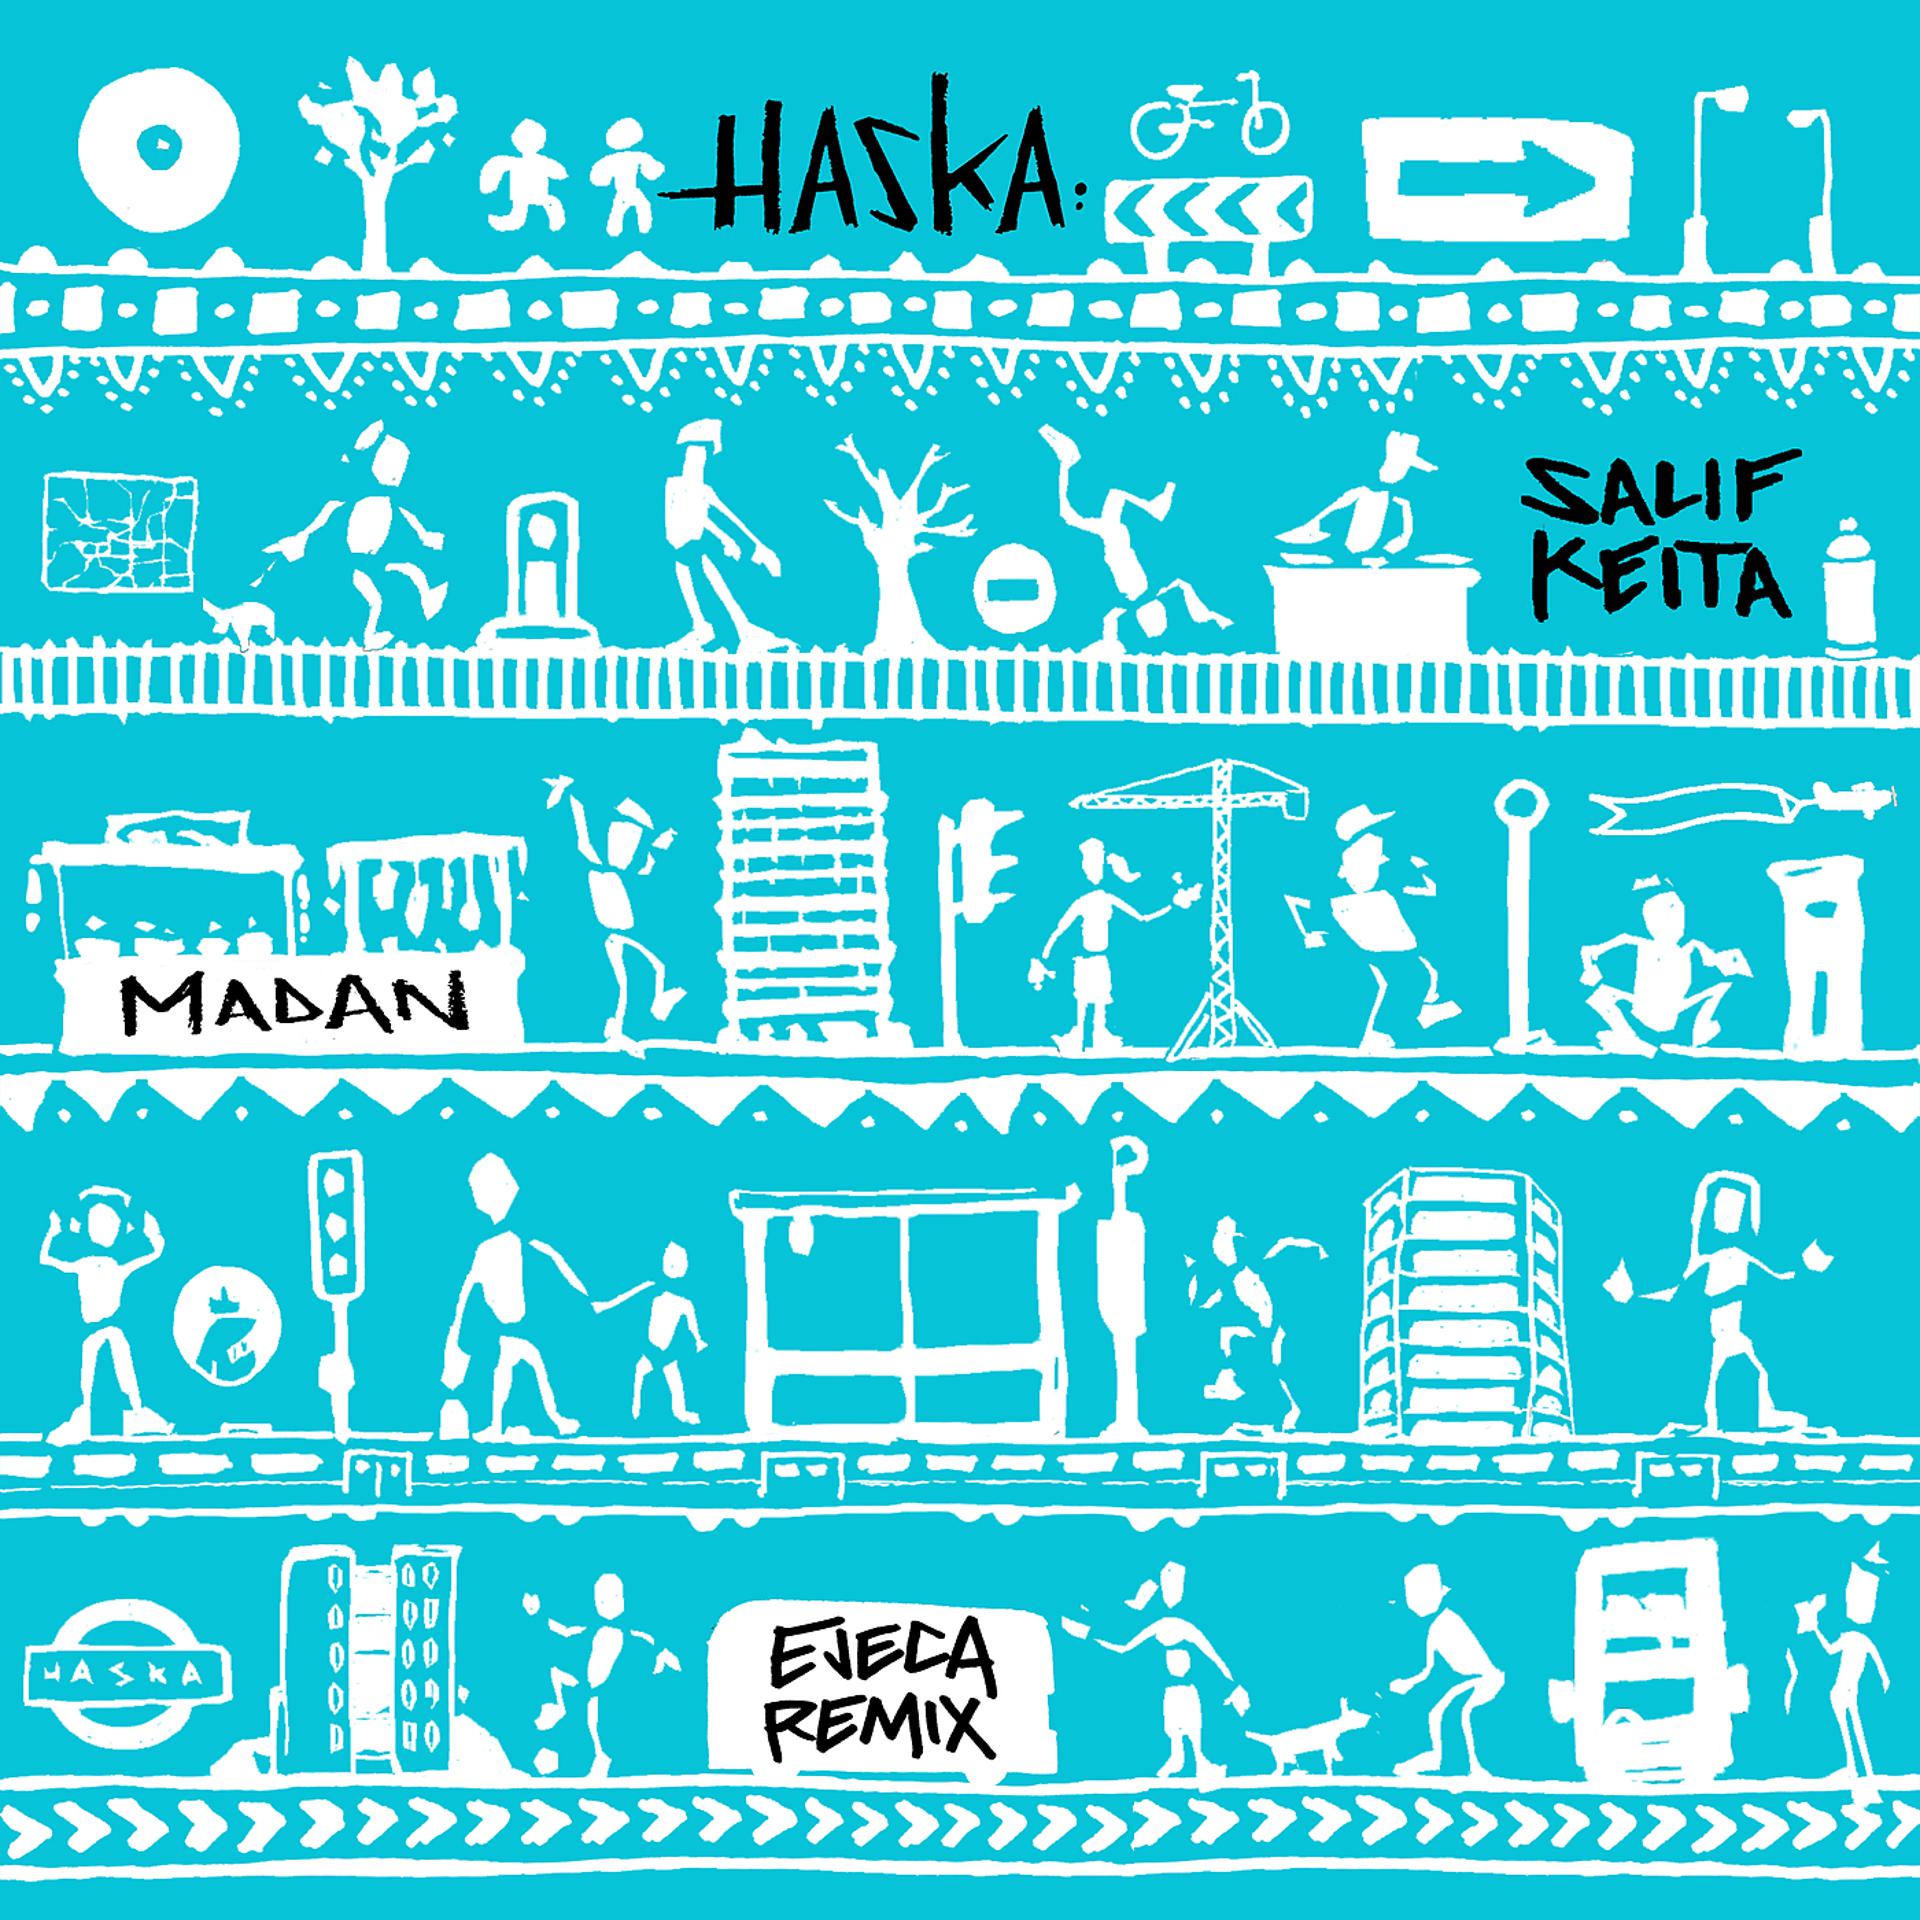 Постер к треку Haska, Salif Keïta - Madan (Ejeca Tribal Remix)